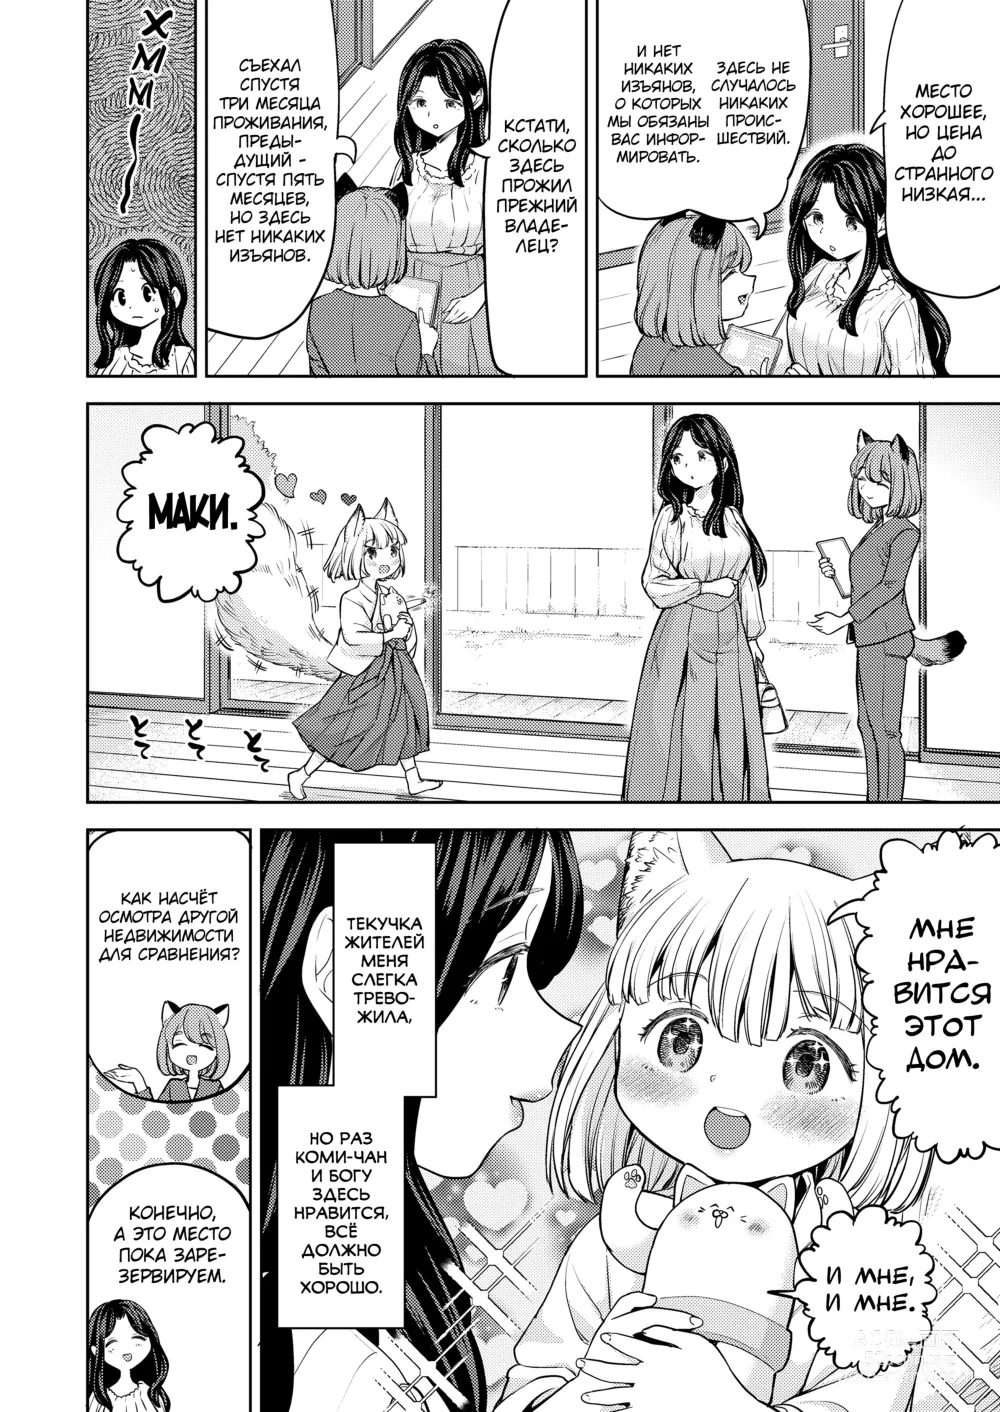 Page 6 of manga Makikomi 6